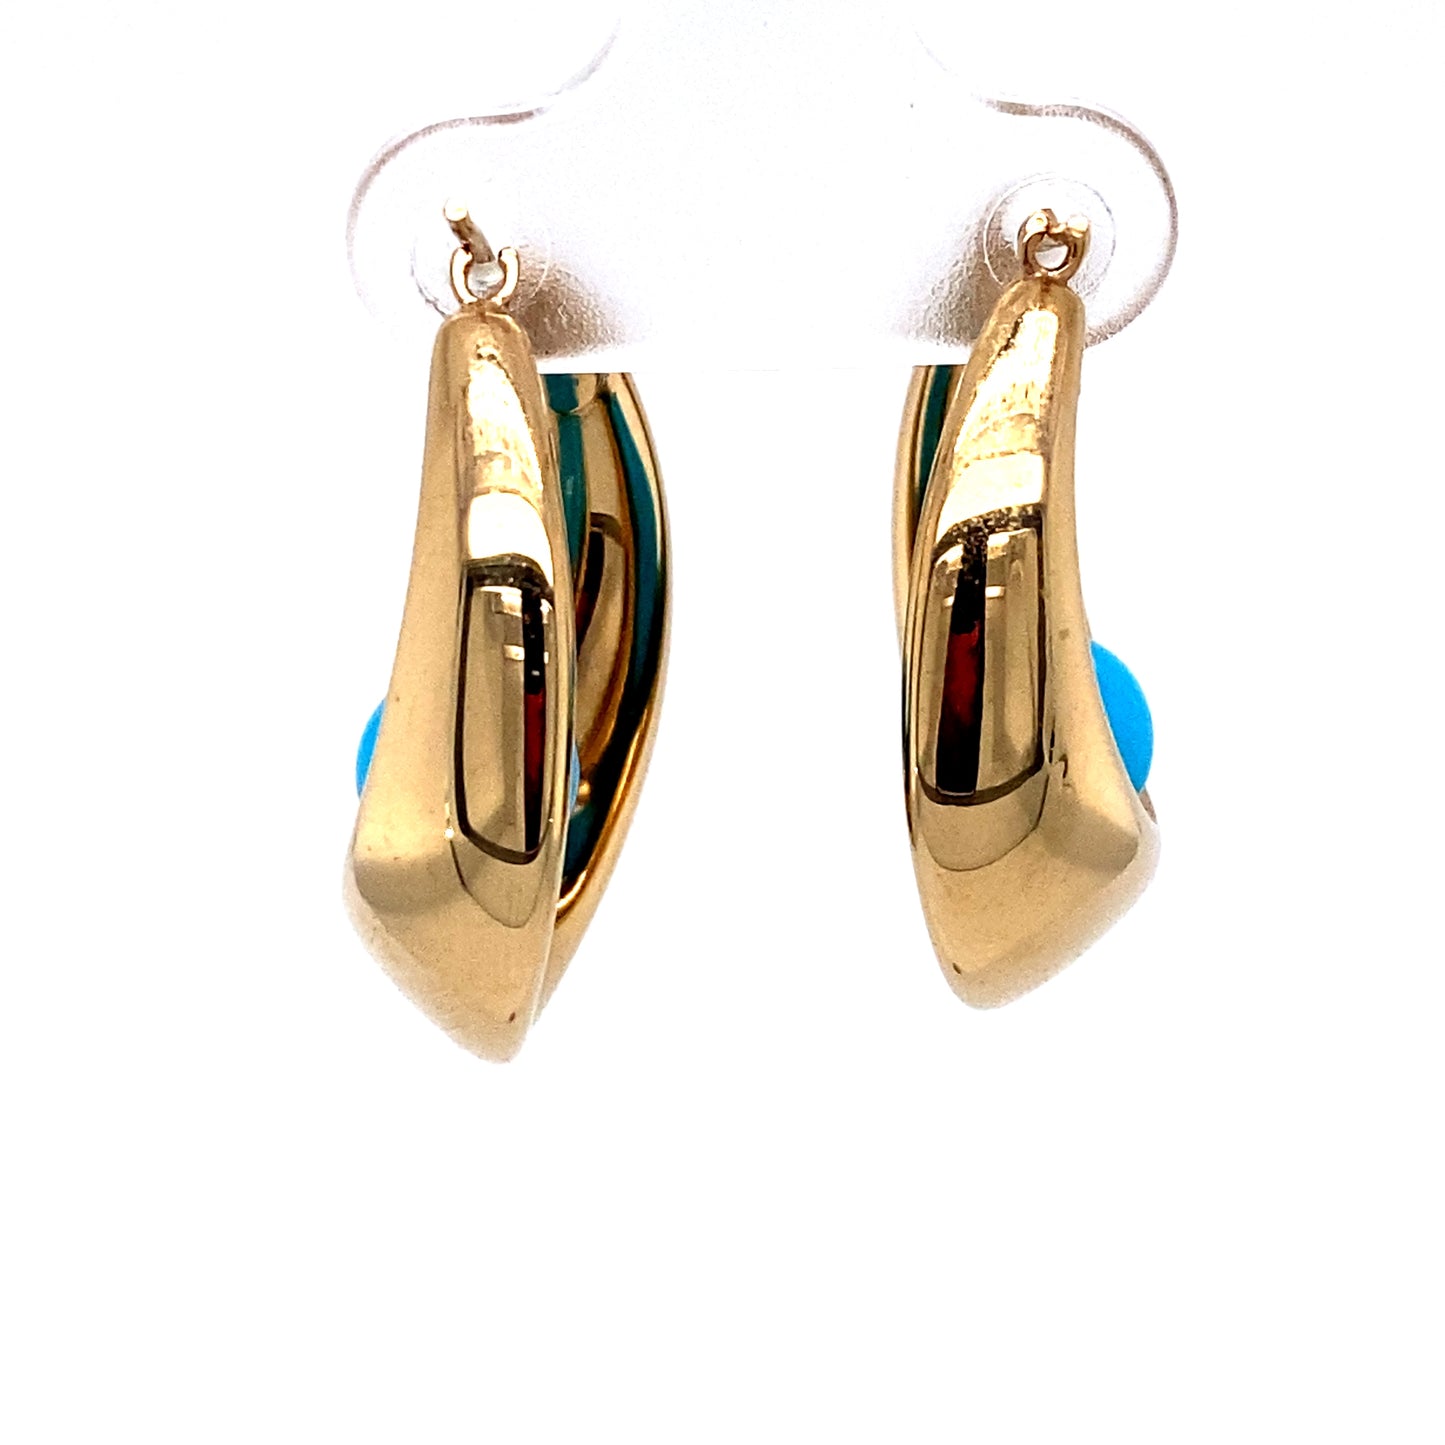 Circa 1950s Turquoise Bead Hoop Earrings in 14K Gold